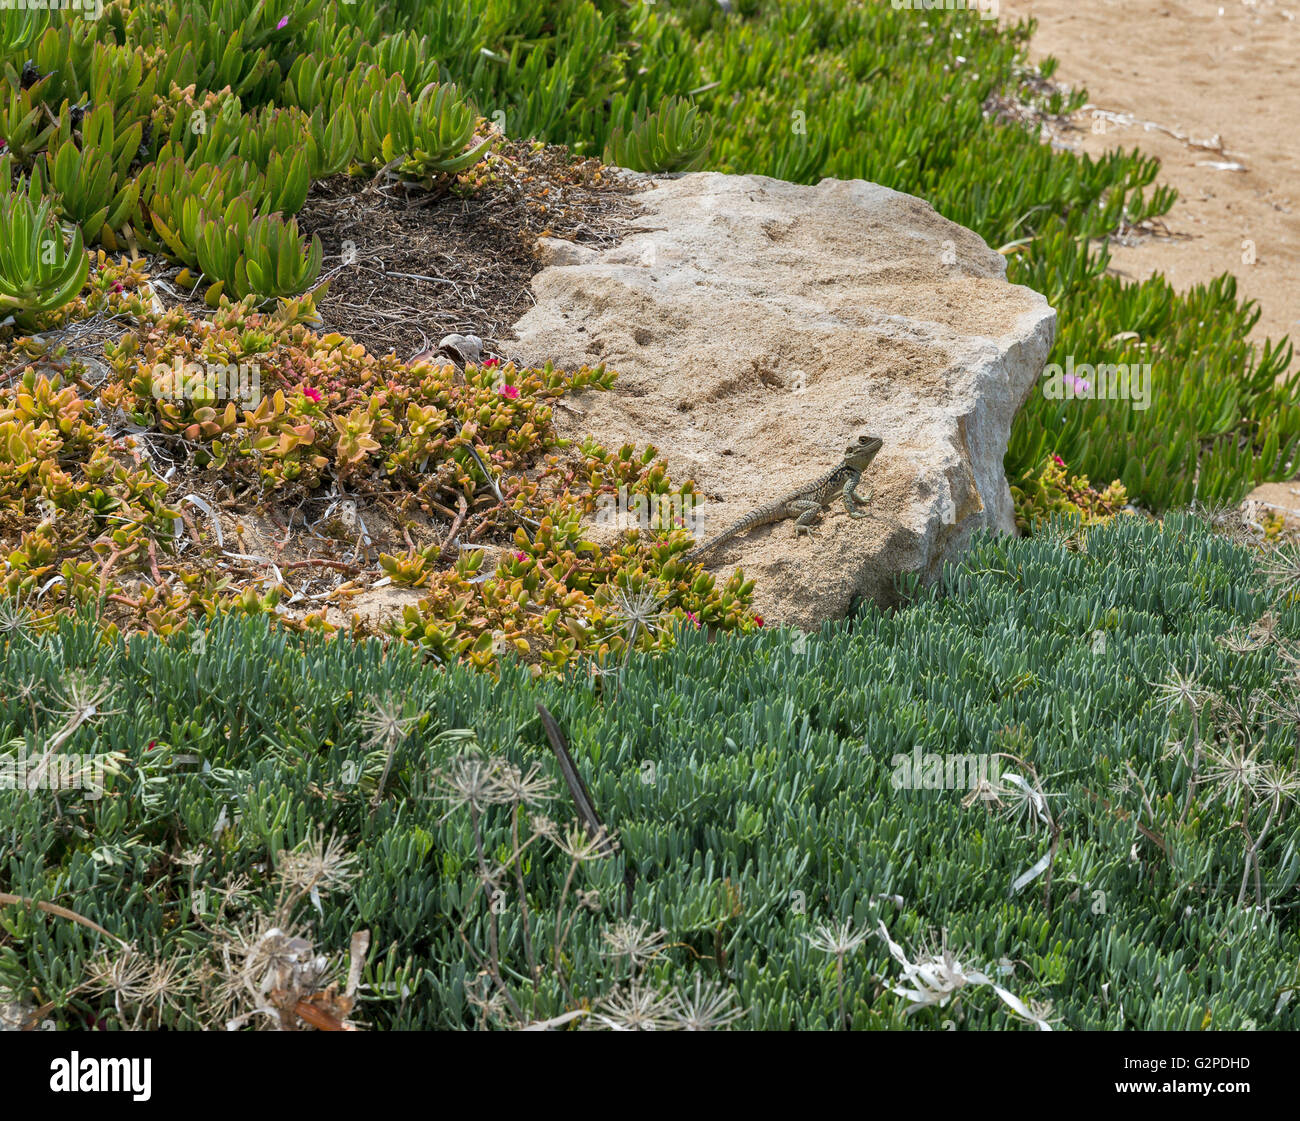 Laudakia stellio étoilé ( Agama lizard ) sur un rocher à l'île. Paphos à Chypre. Banque D'Images